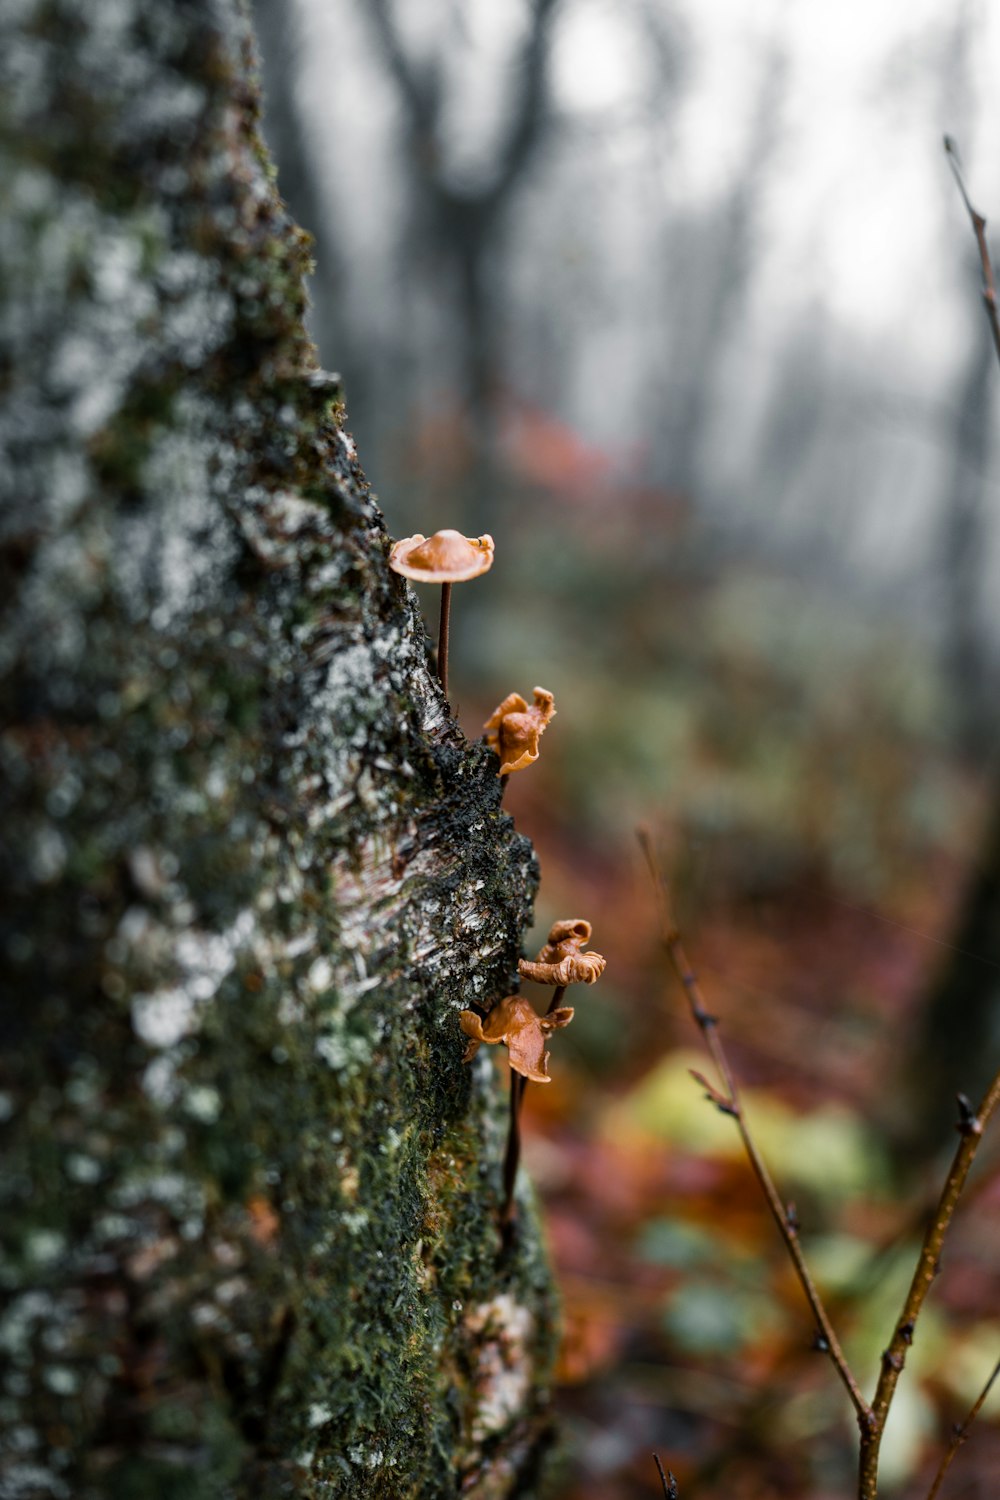 un tronco de árbol cubierto de musgo con pequeños hongos que crecen en él